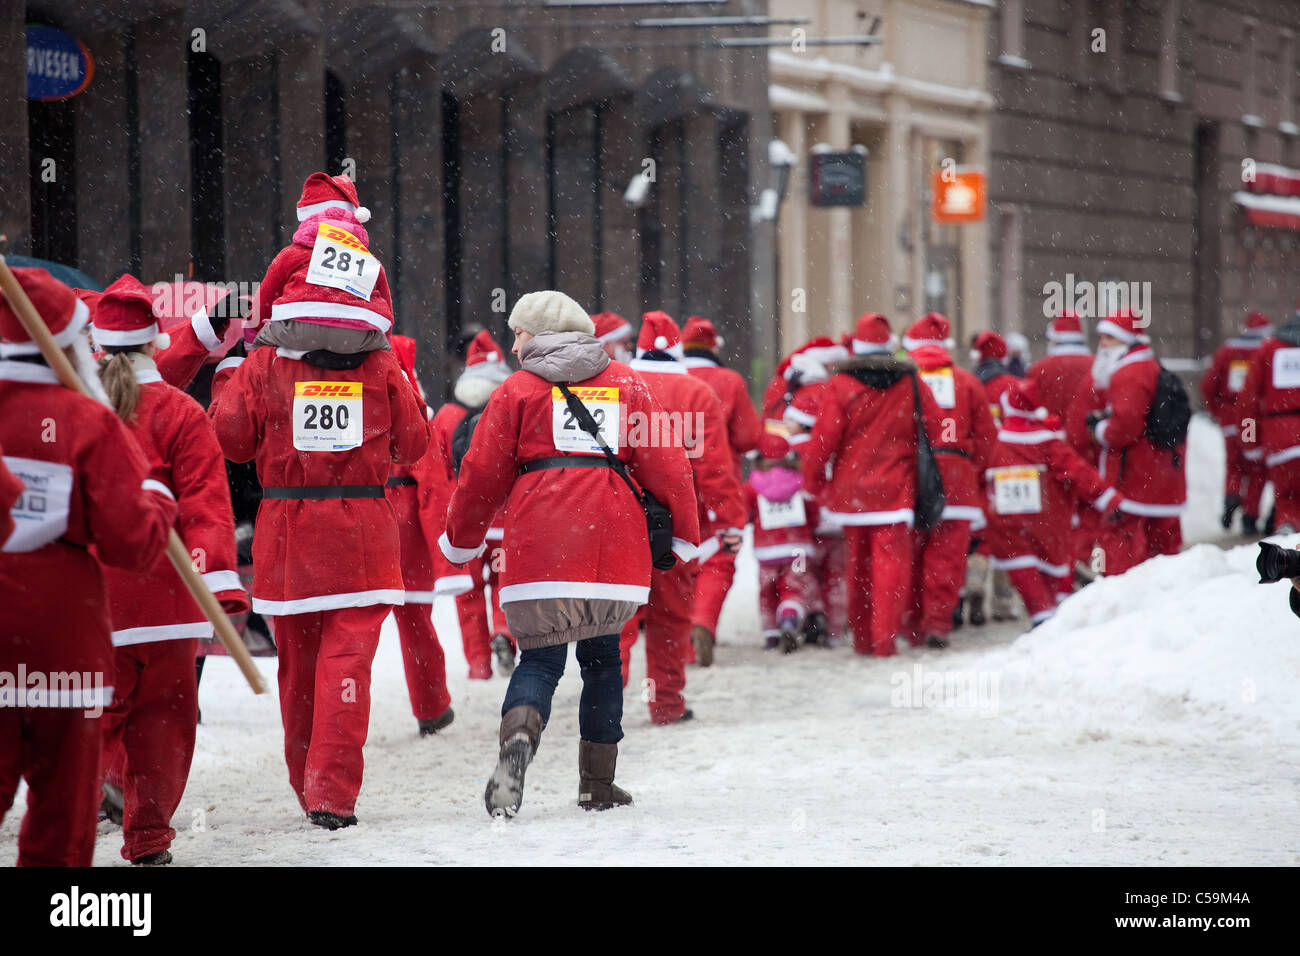 RIGA, Lettonia - 12 dicembre: i partecipanti del terzo annuale di Babbo Natale divertente correre e camminare in Riga, Lettonia, 12 dicembre, 2010 Foto Stock